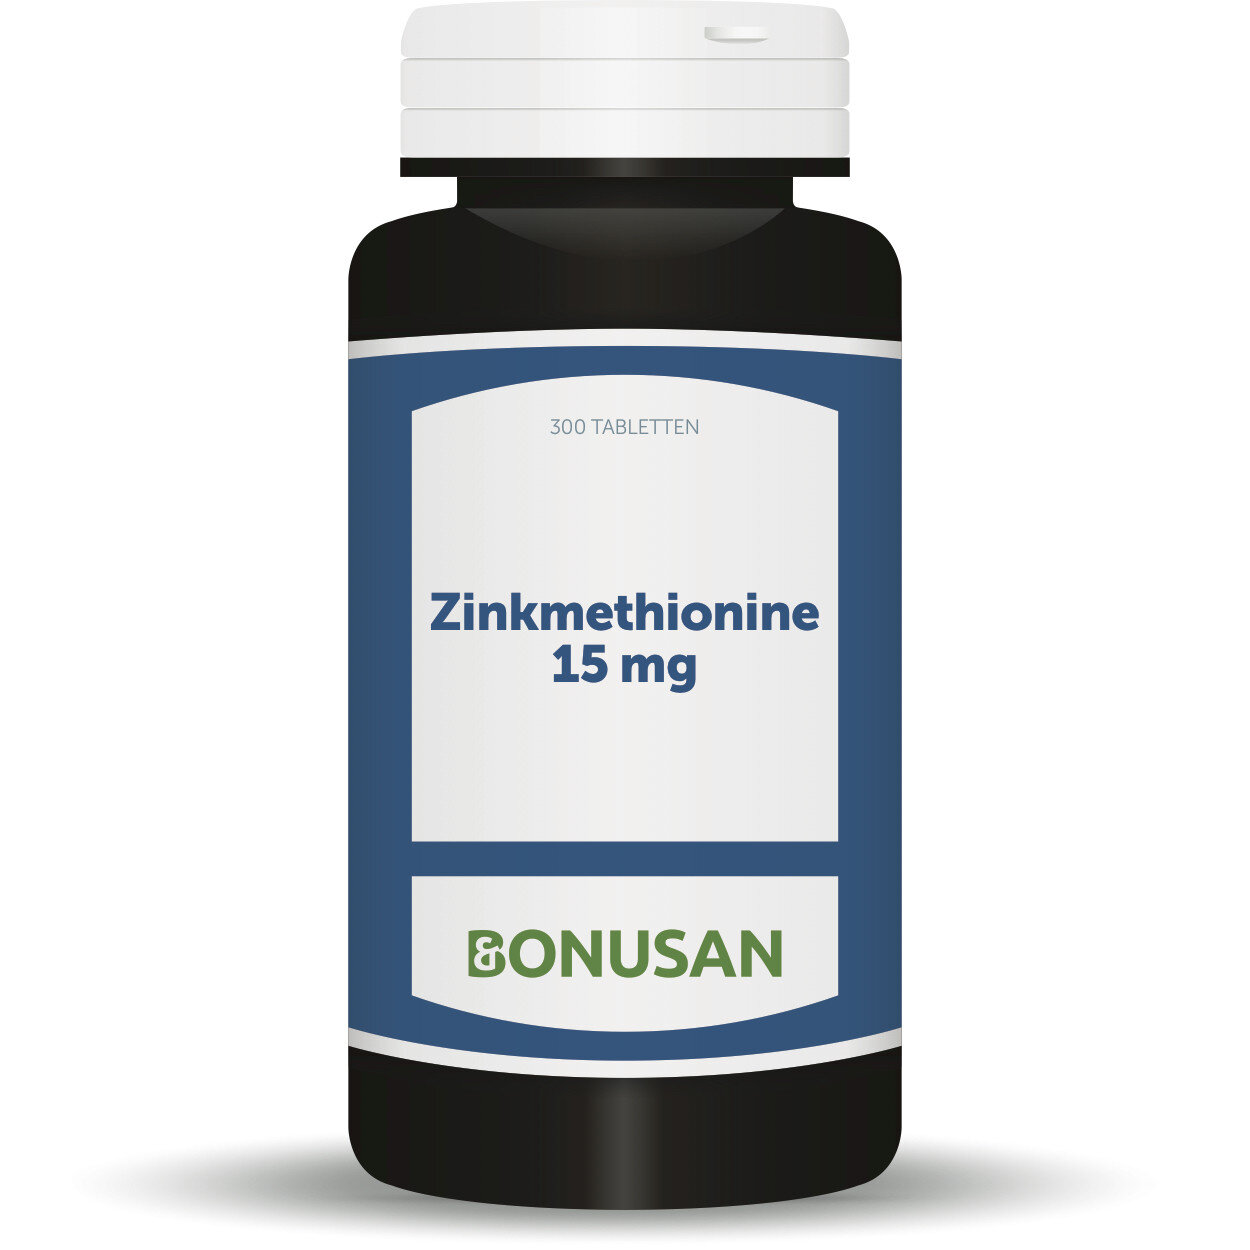 Bonusan Zinkmethionine 15 mg grootverpakking